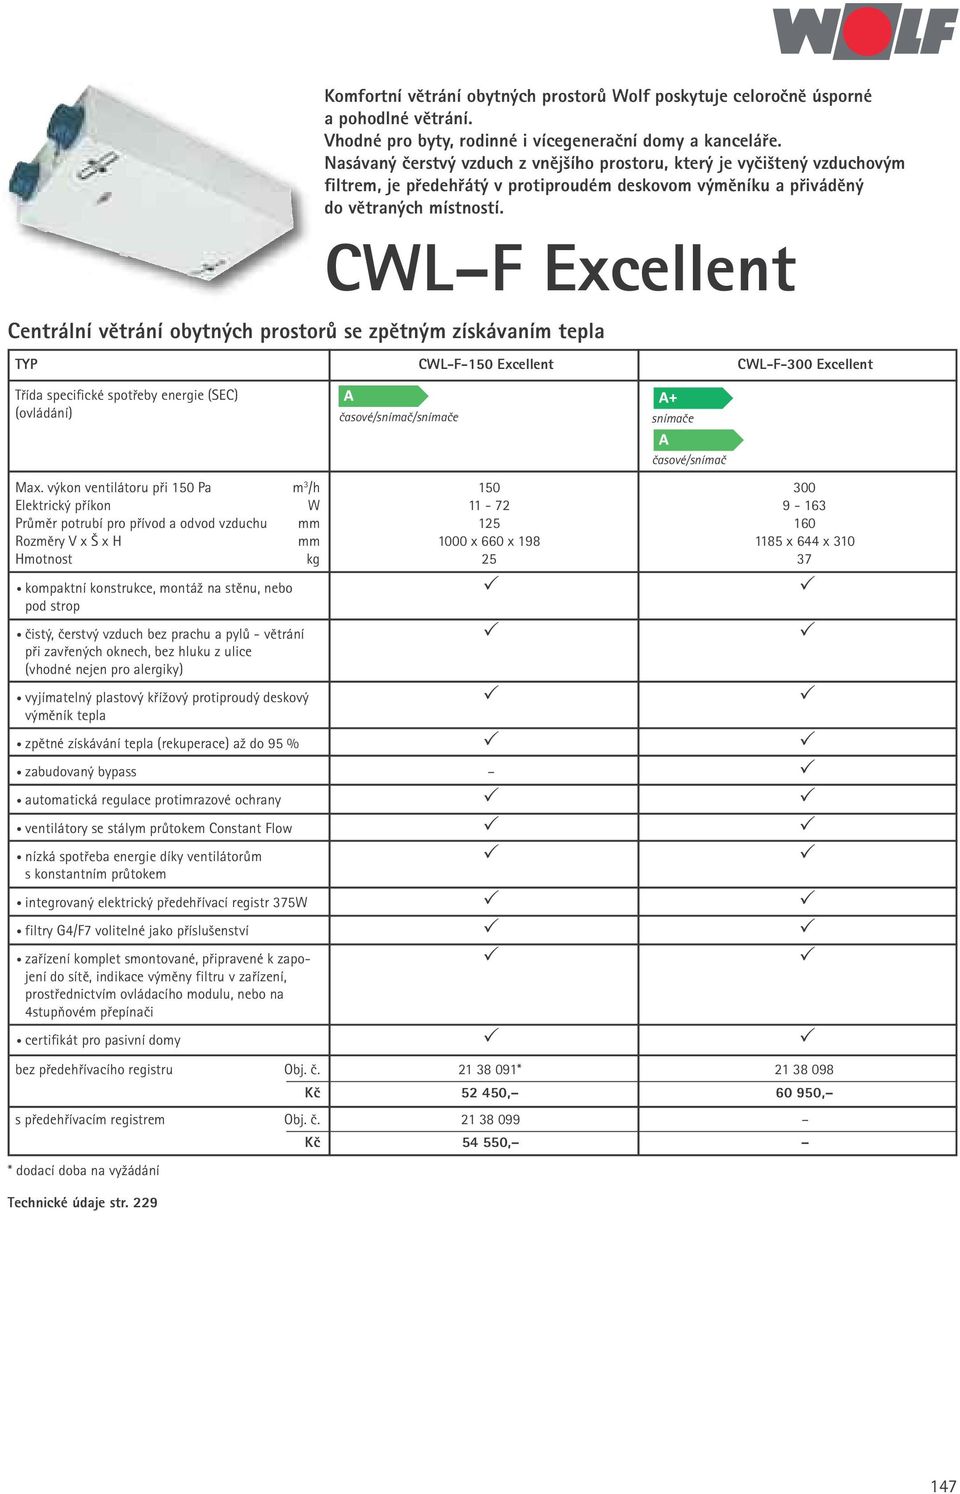 CWL F Excellent Centrální větrání obytných prostorů se zpětným získávaním tepla TYP CWL-F-150 Excellent Třída specifické spotřeby energie (SEC) (ovládání) časové/snímač/snímače snímače Max.